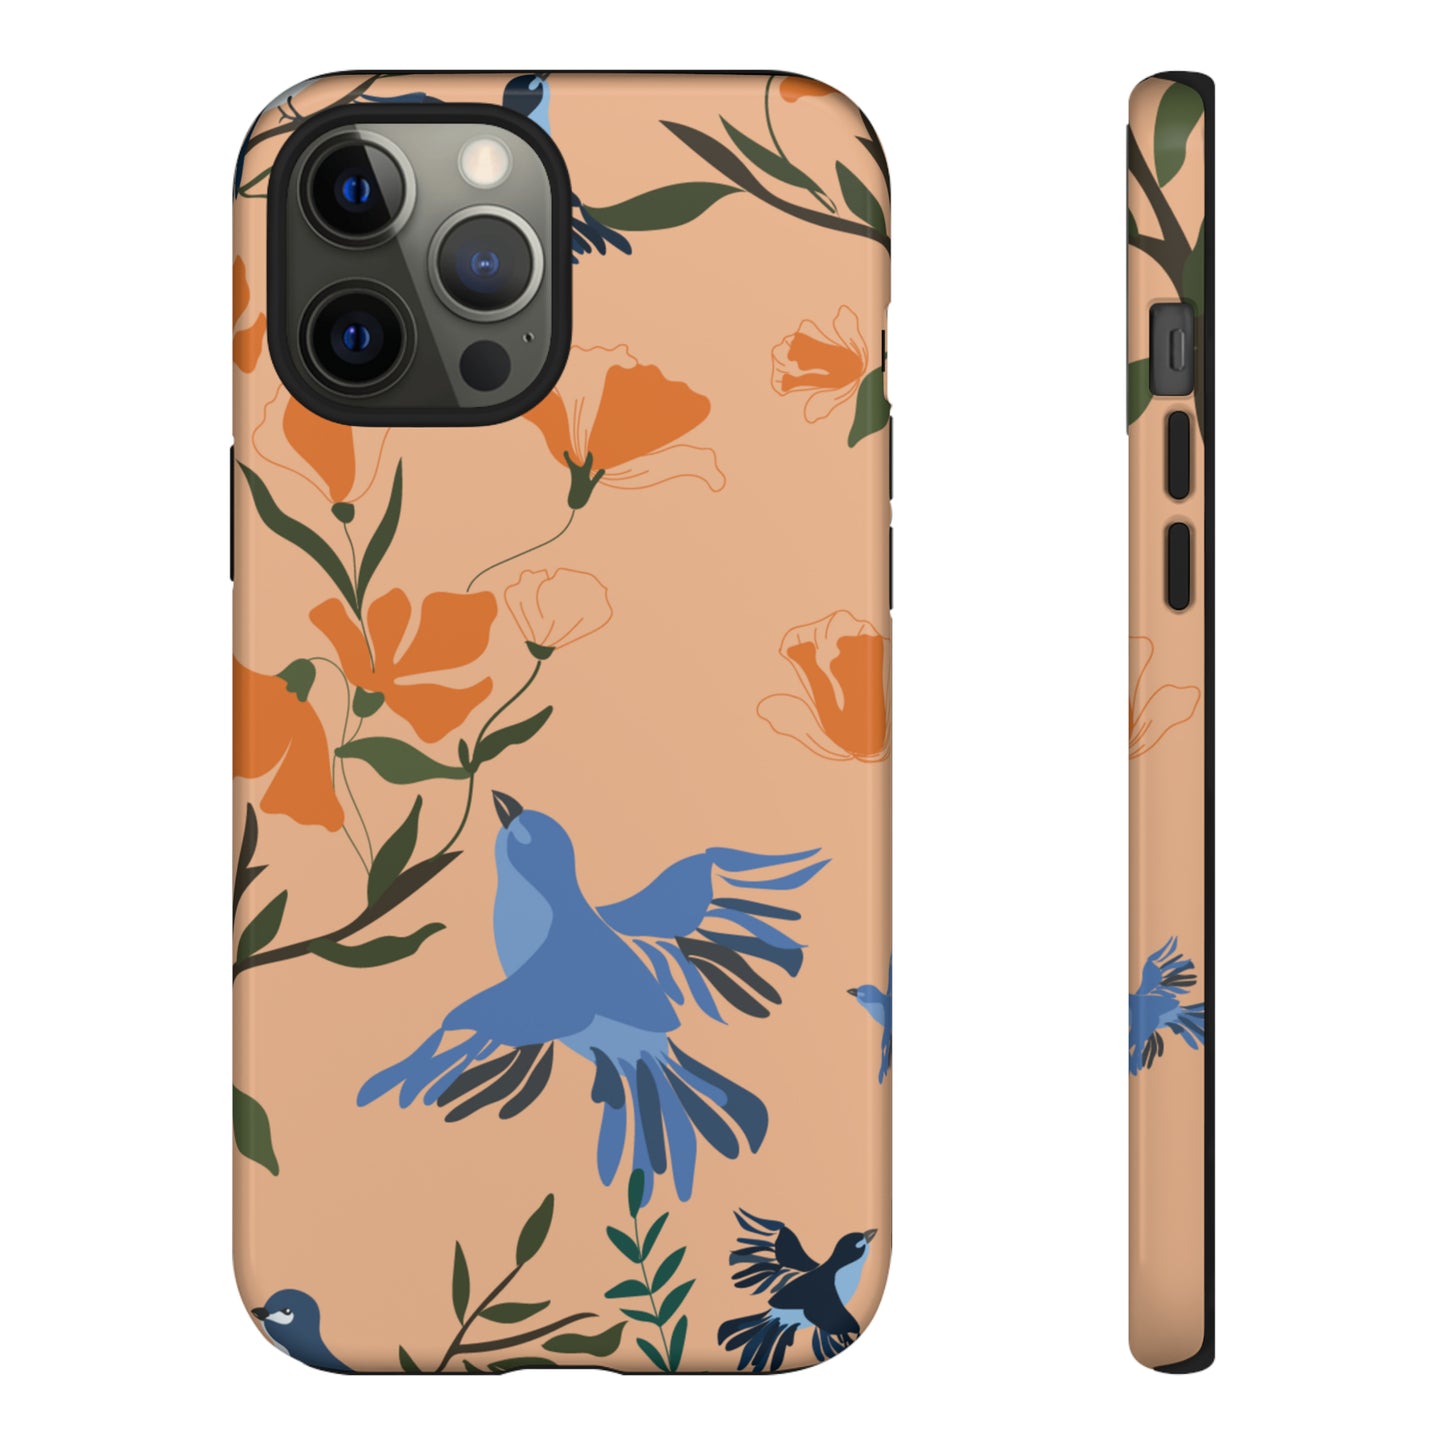 Joyful Blue Bird | Hardshell Dual Layer Phone Case